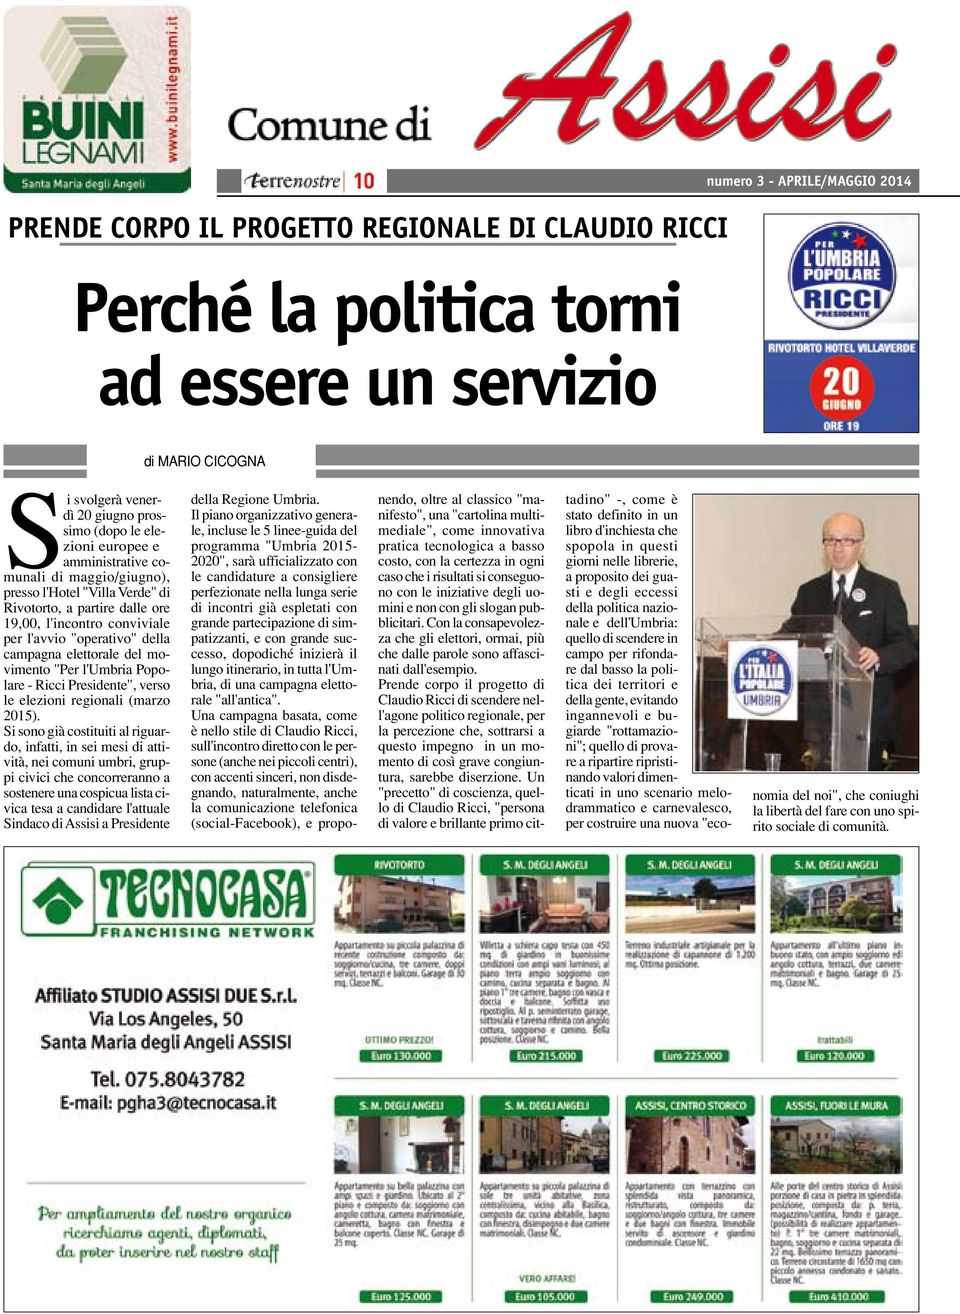 elettorale del movimento "Per l'umbria Popolare - Ricci Presidente", verso le elezioni regionali (marzo 2015).